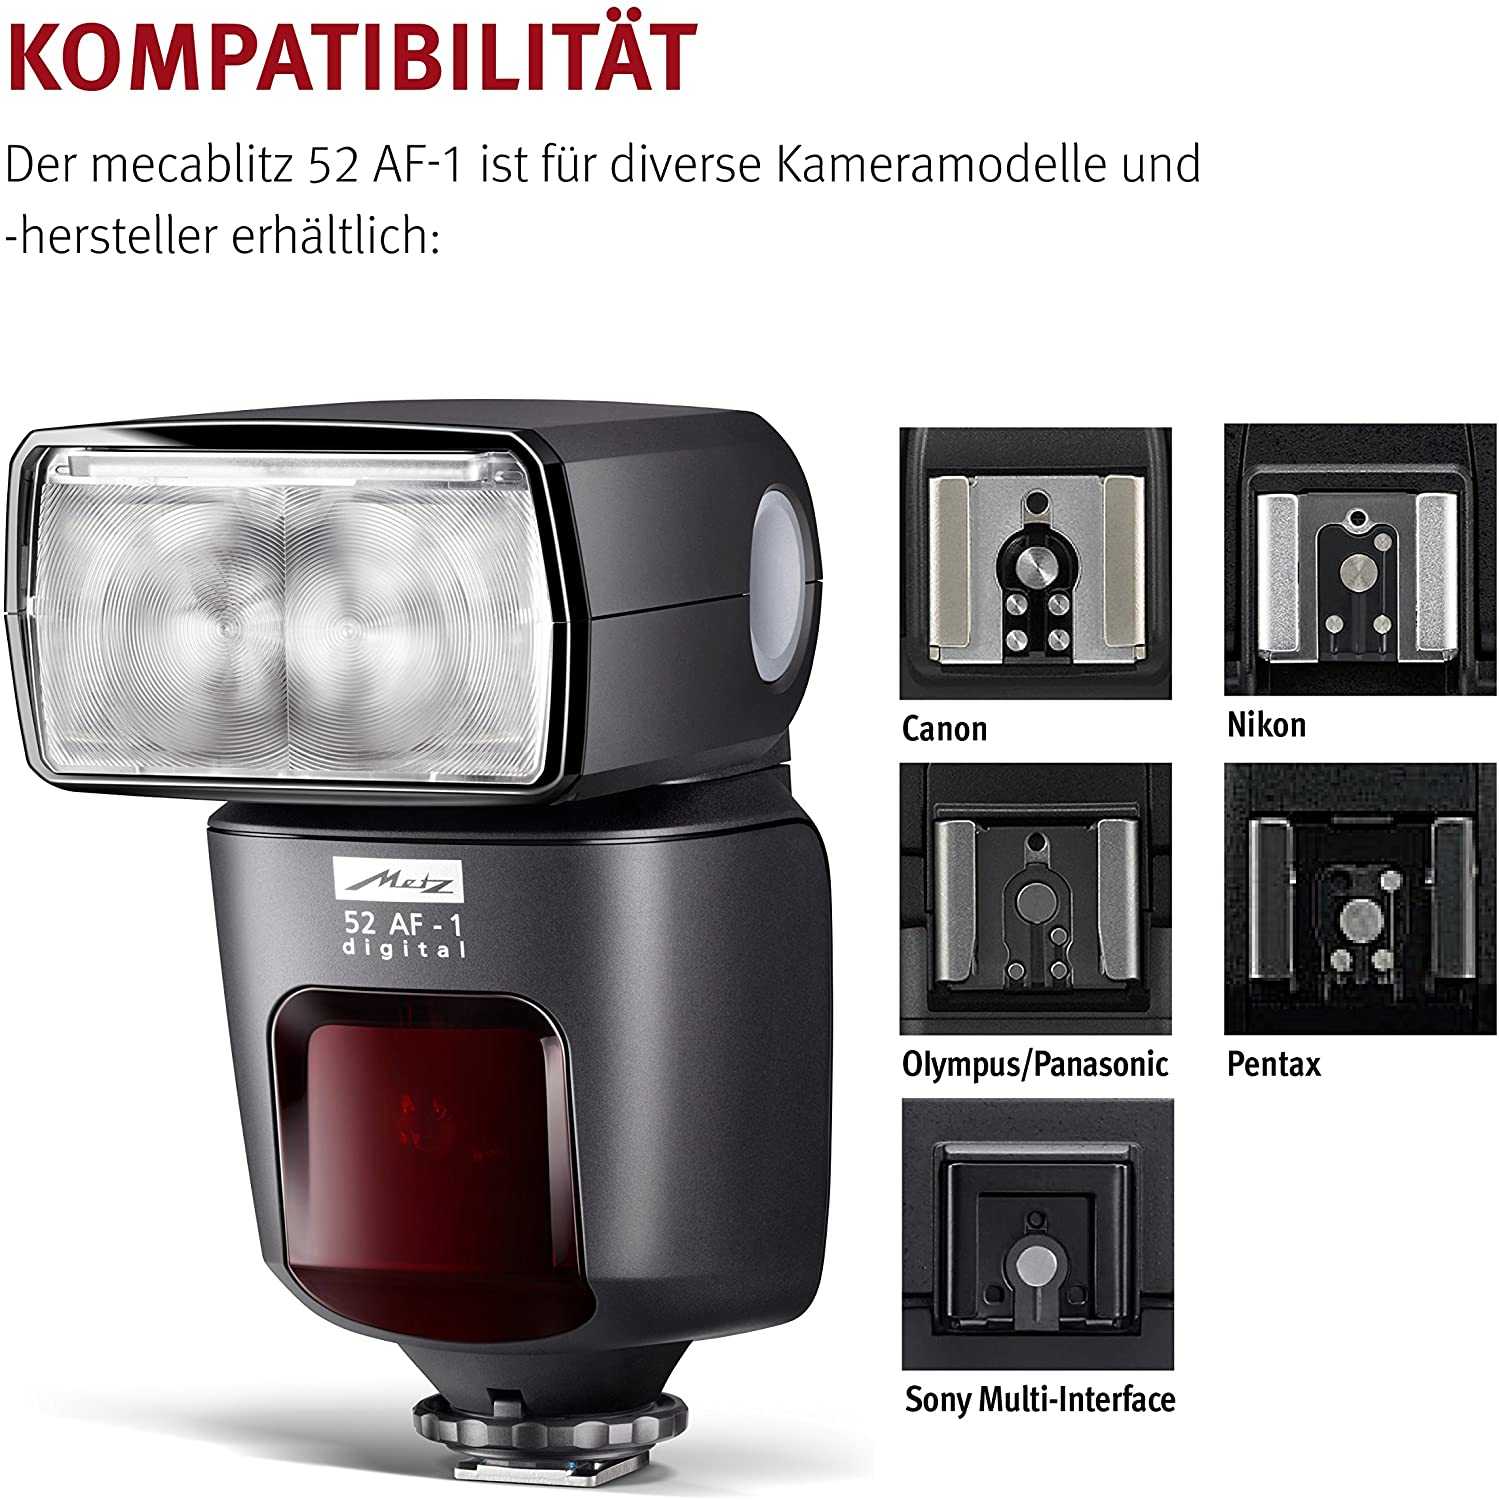 Metz mecablitz 58 af-2 digital for canon - купить , скидки, цена, отзывы, обзор, характеристики - вспышки для фотоаппаратов